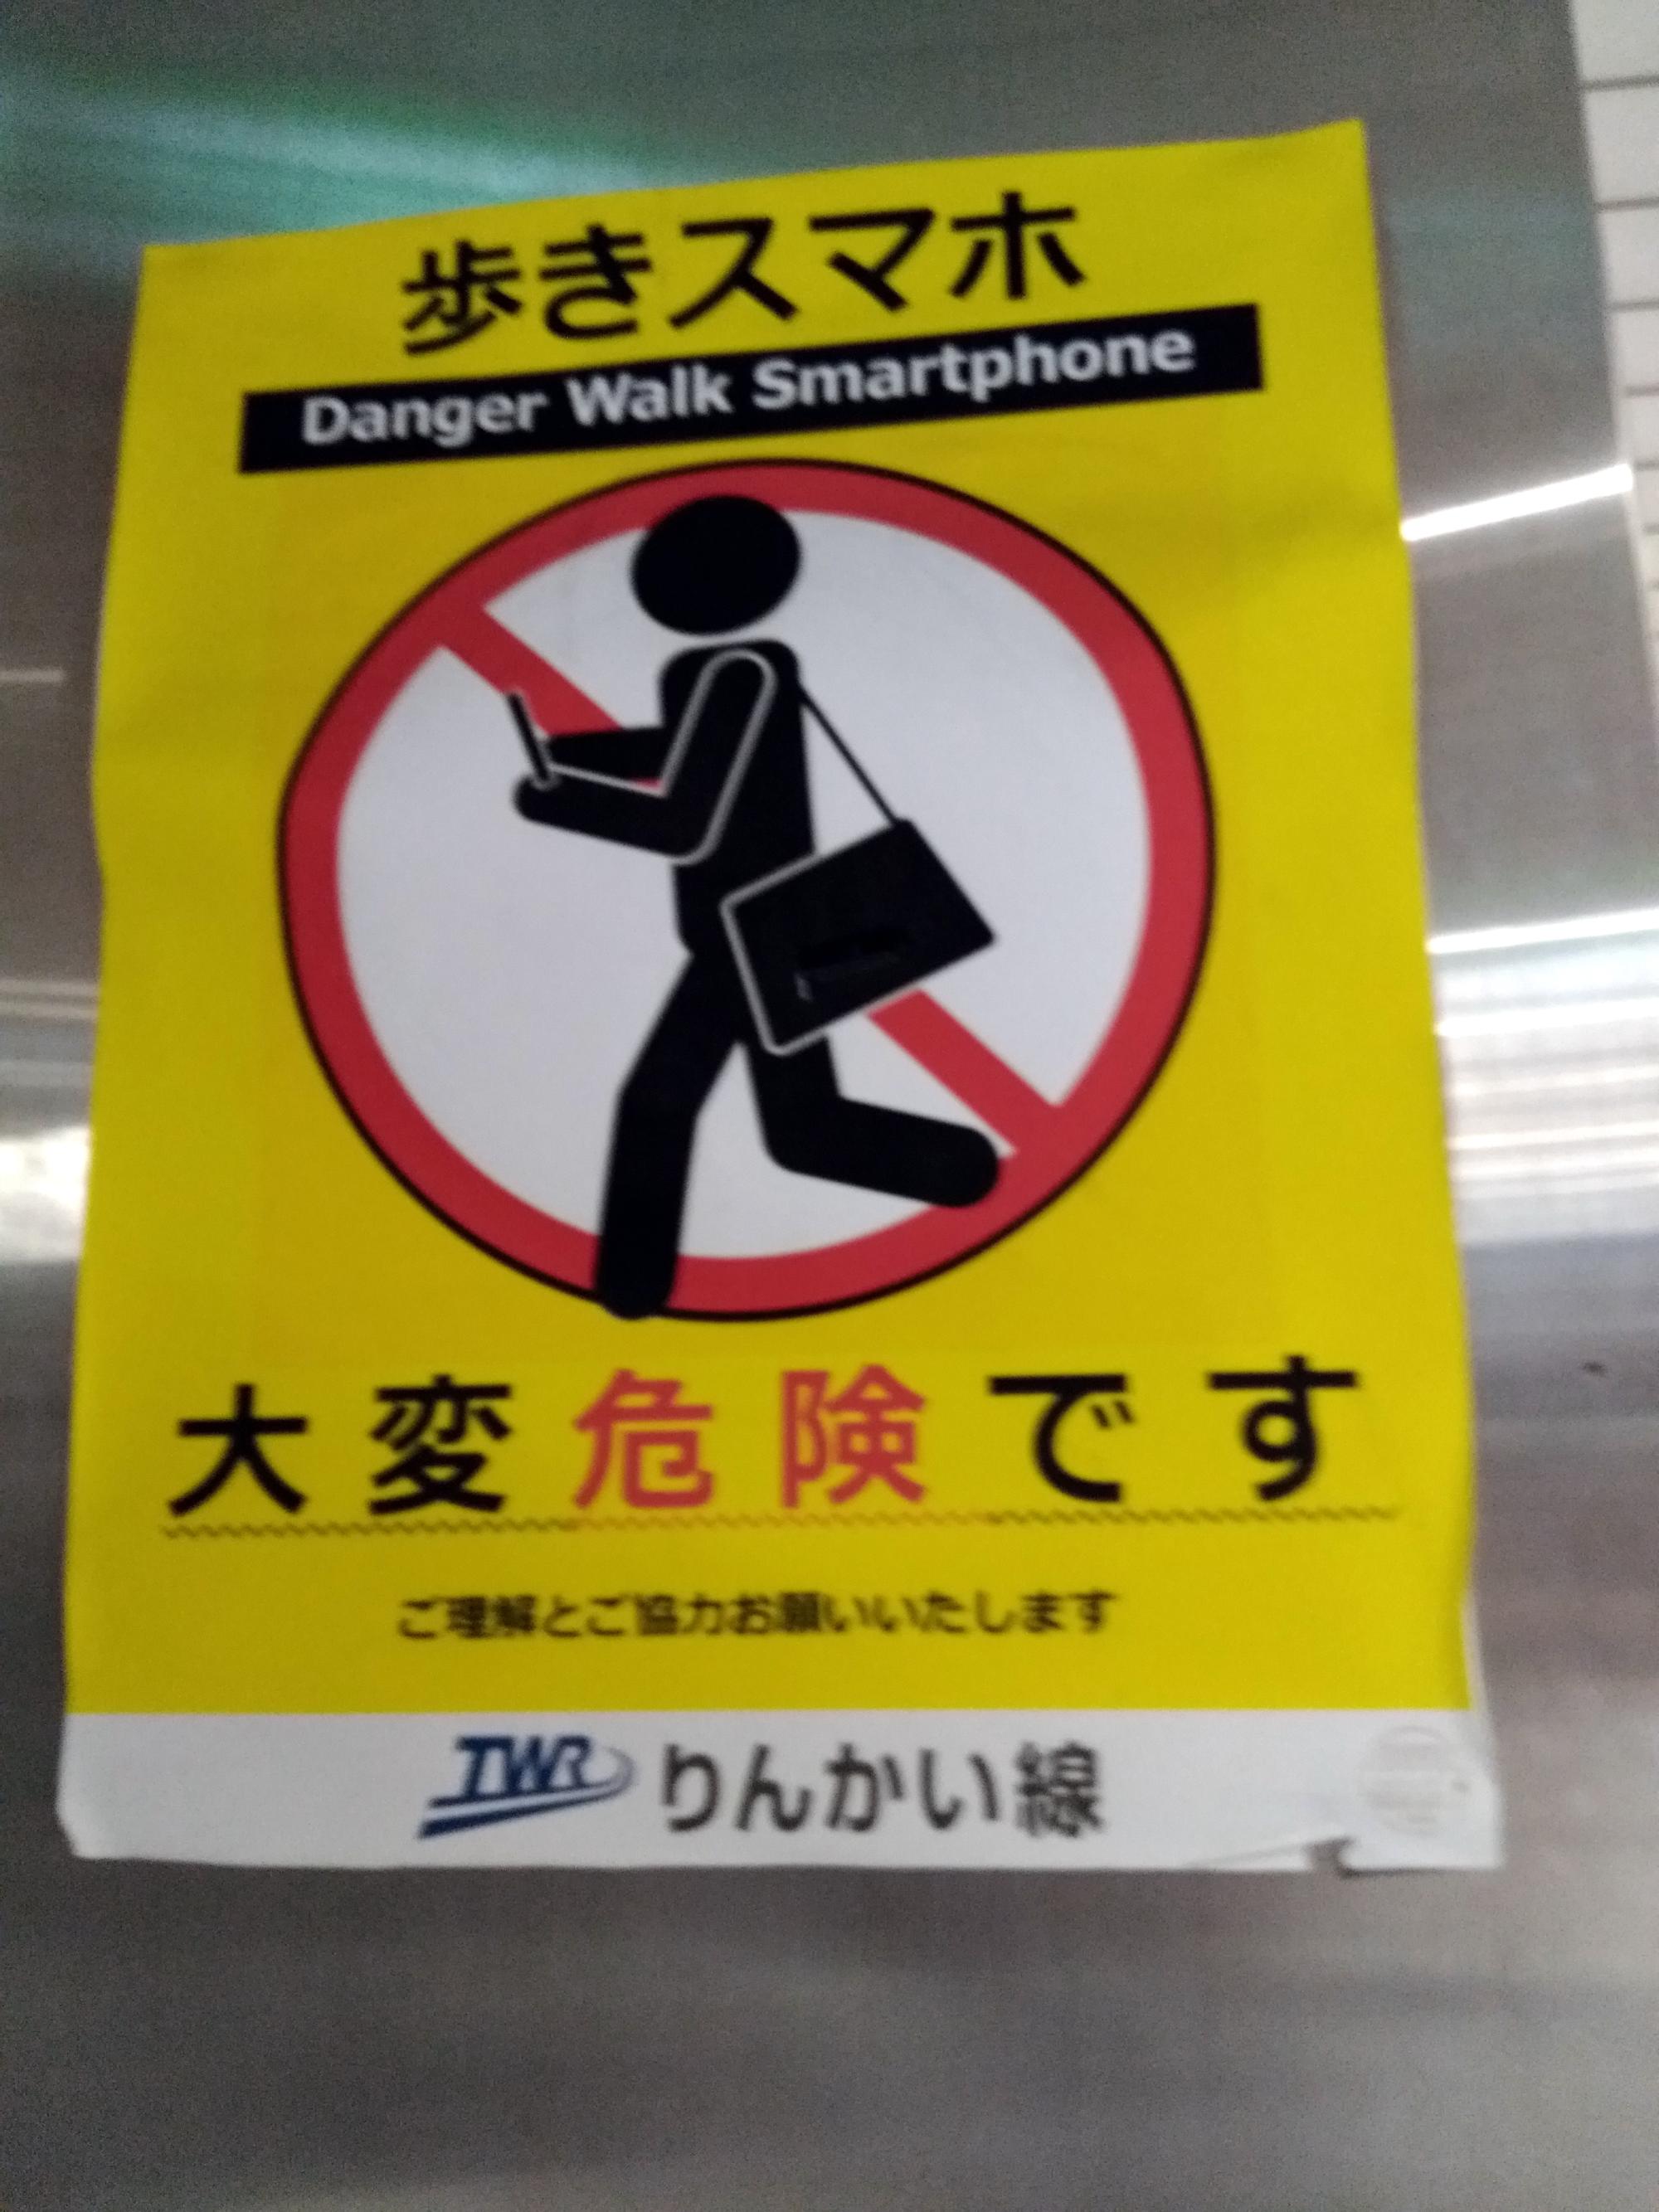 Signs Of Japan - Smartphone Walking